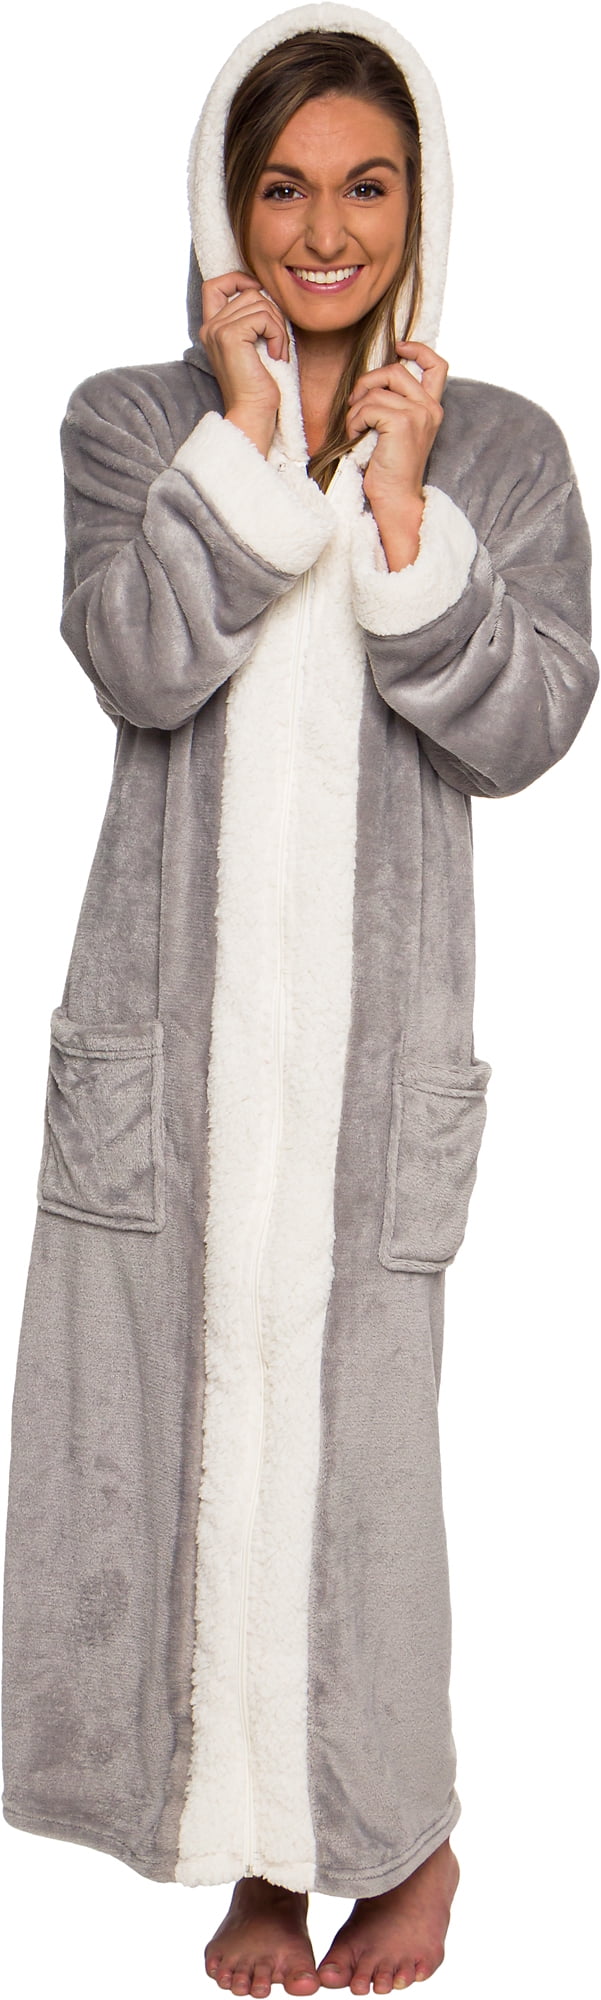 Silver Lilly - Sherpa Trim Hooded Robe w/ Zipper - Women's Full Length